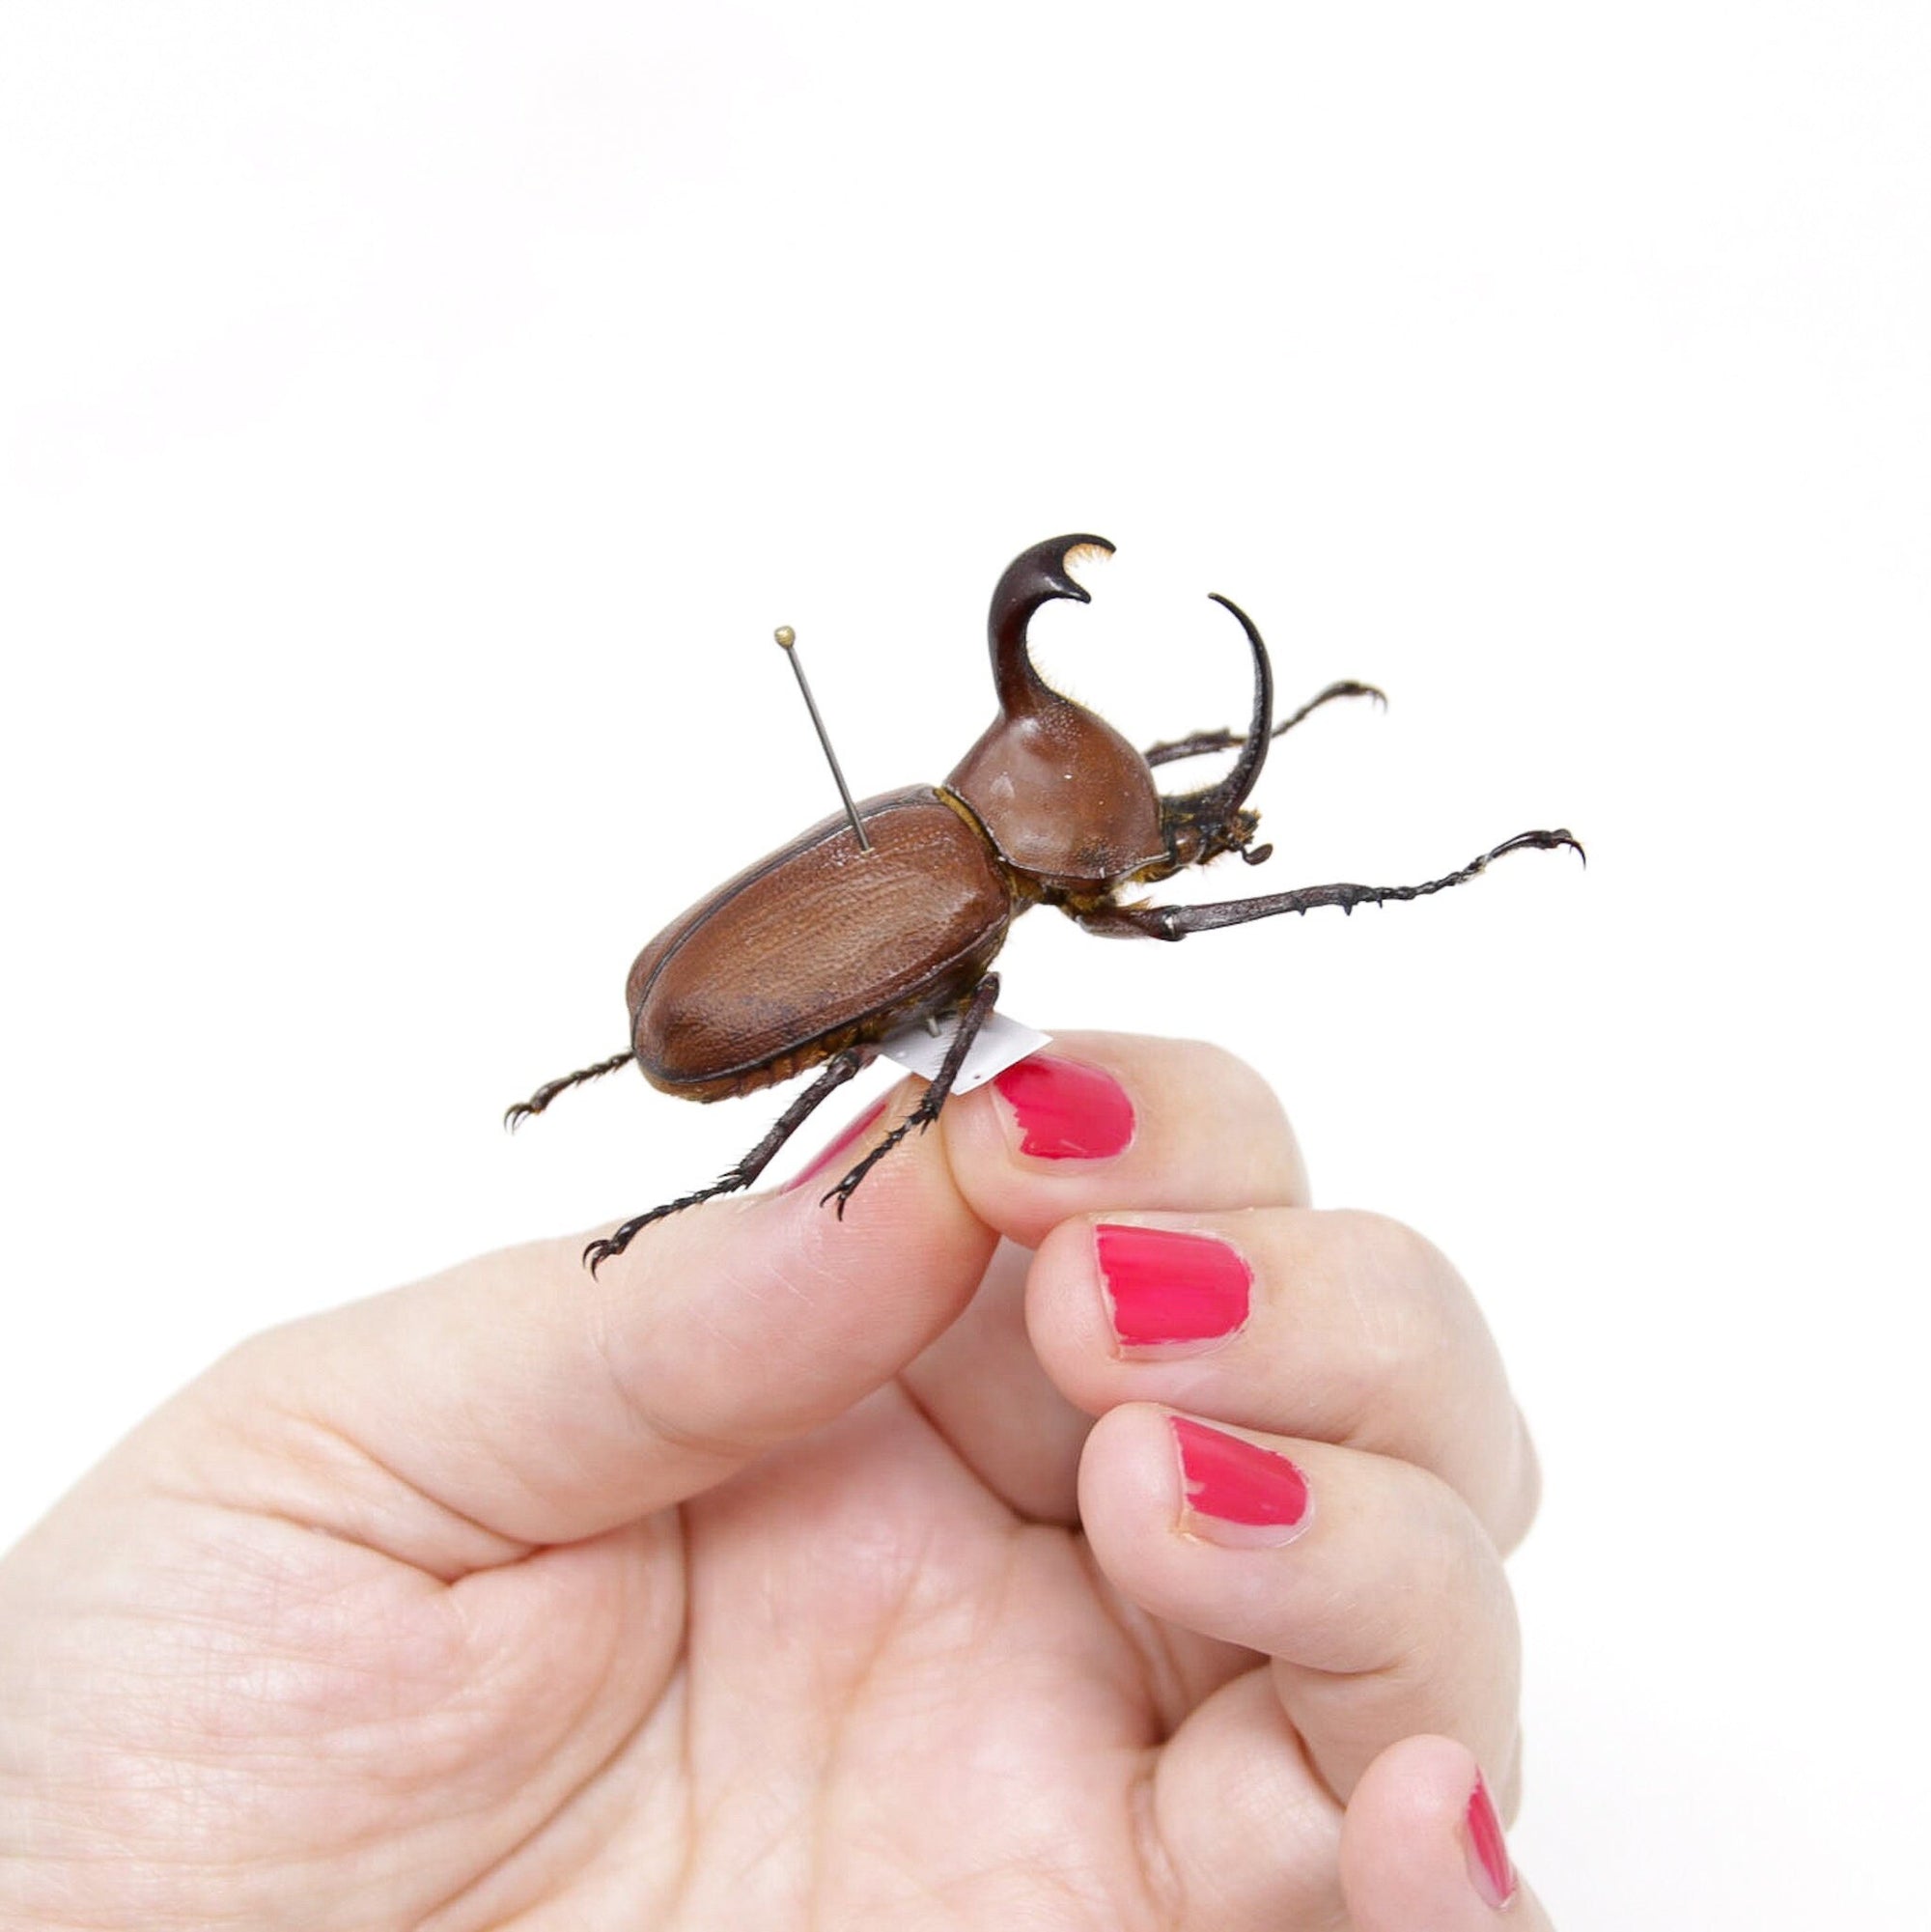 Golofa pizarro 49.2mm, A1 Real Beetle Specimen, Entomology Taxidermy #OC08